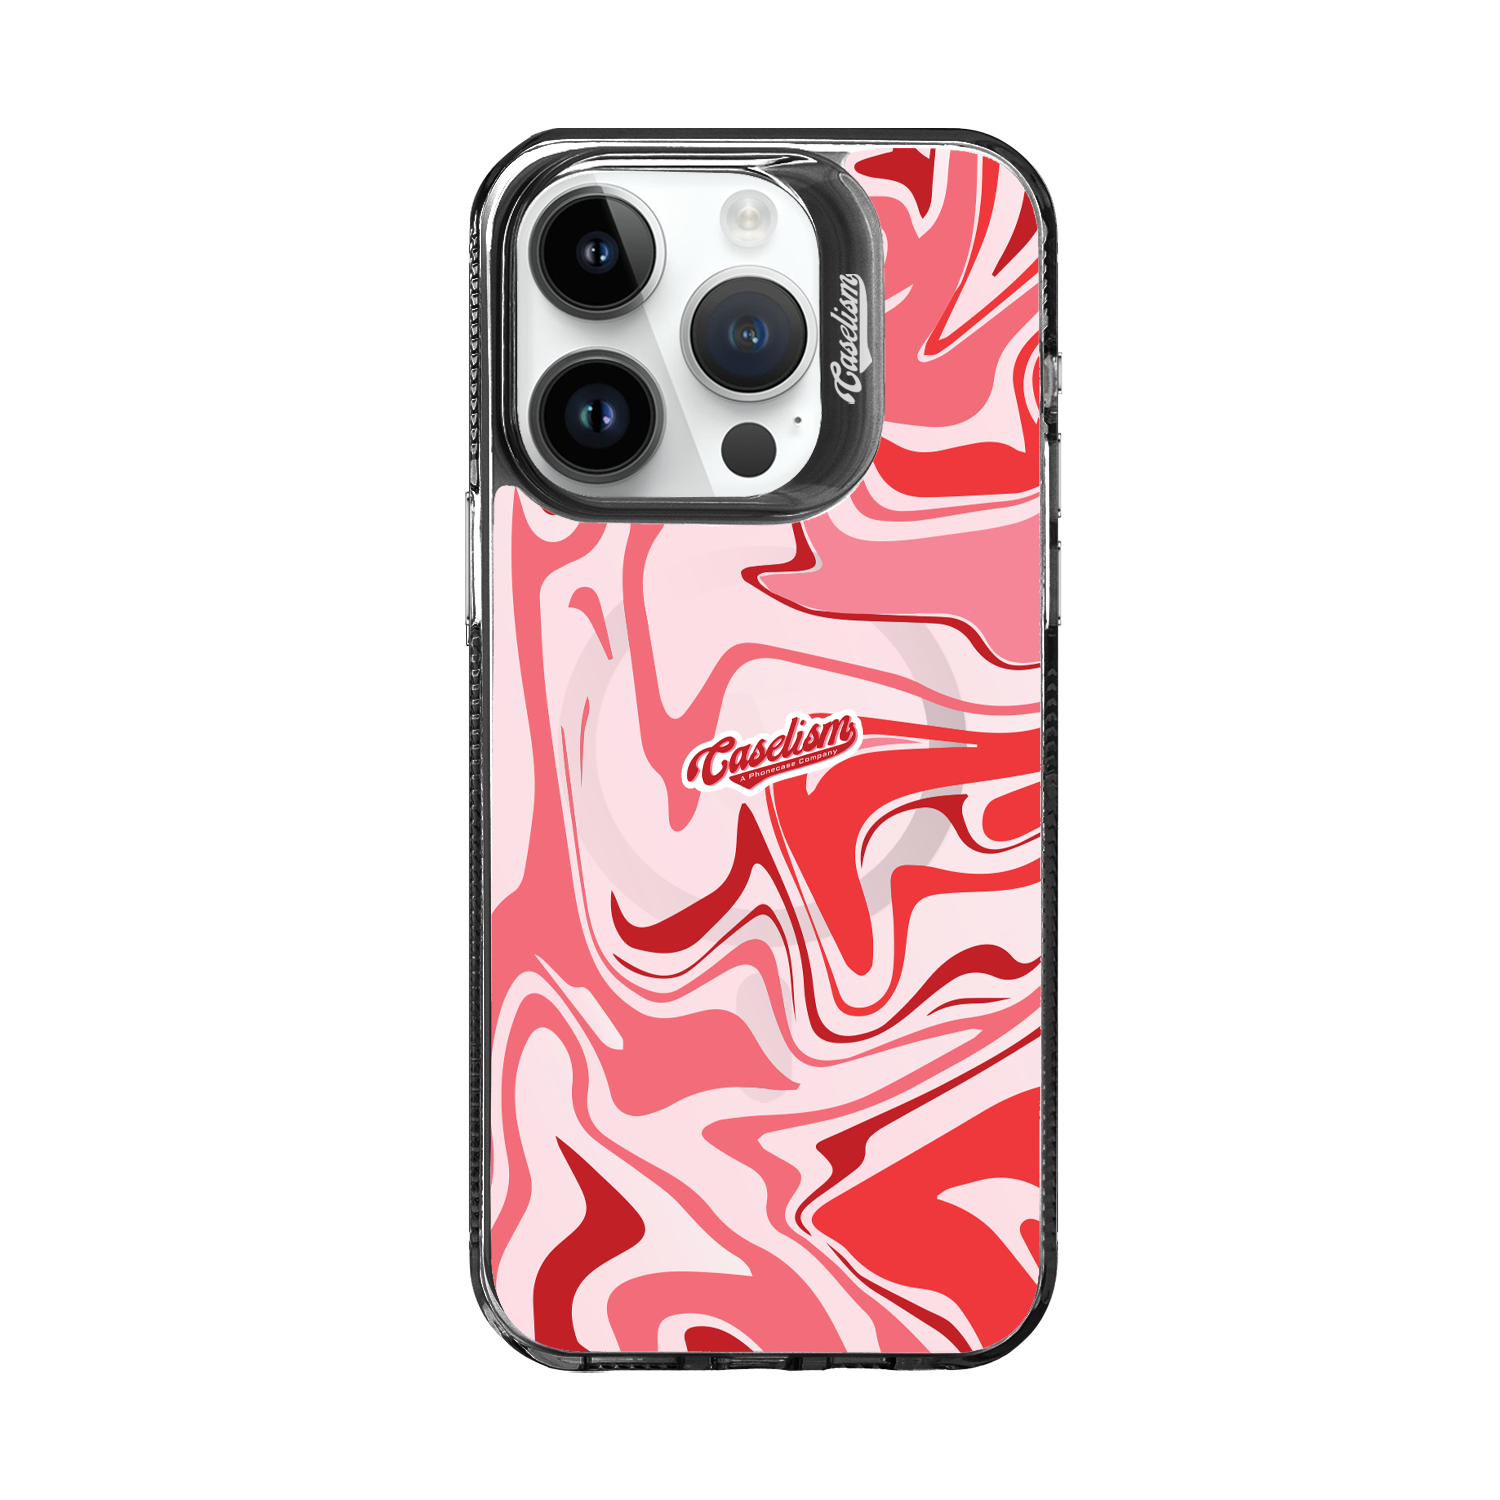 CASE009 - ColorLite Case for iPhone